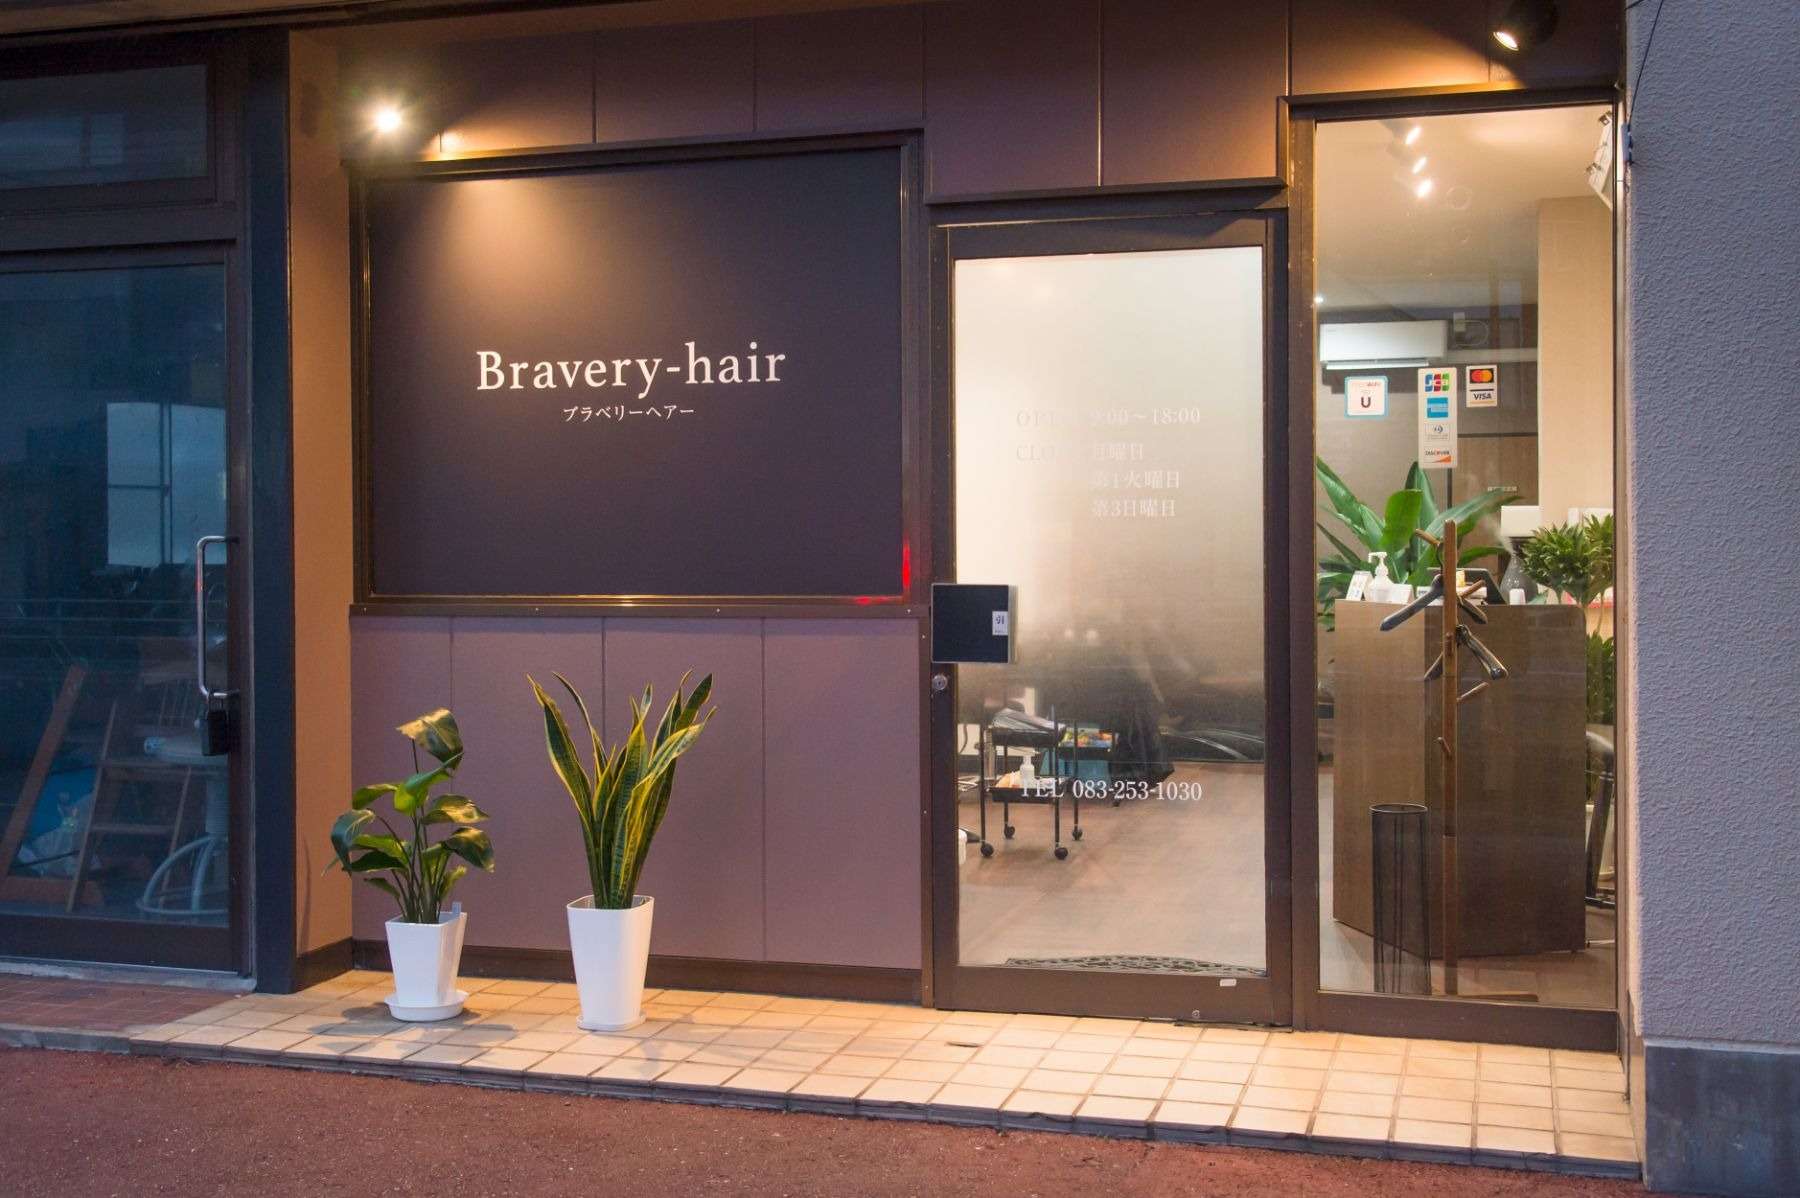 下関市綾羅木駅から1番近い美容院のBravery-hair !